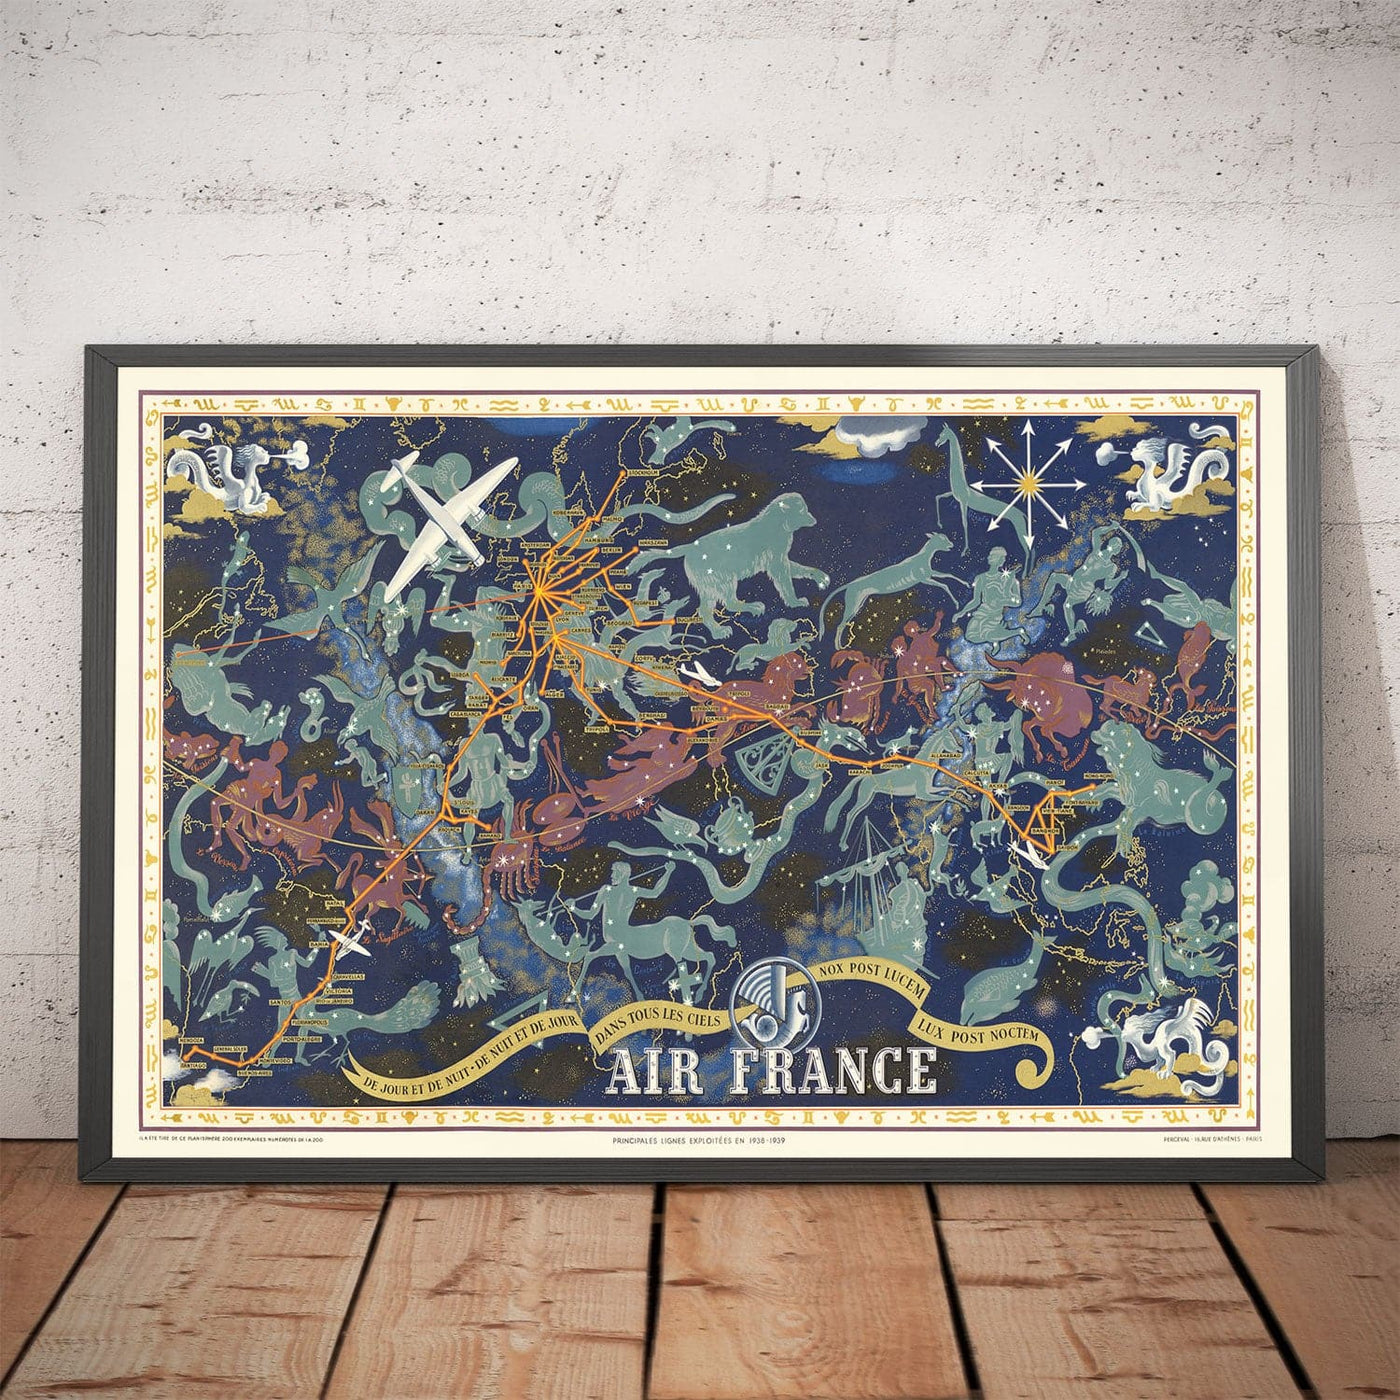 Alte Air France Zodiac World Map, 1939 von Lucien Boucher - Historische Flugzeuge Route Himmelsmauer.